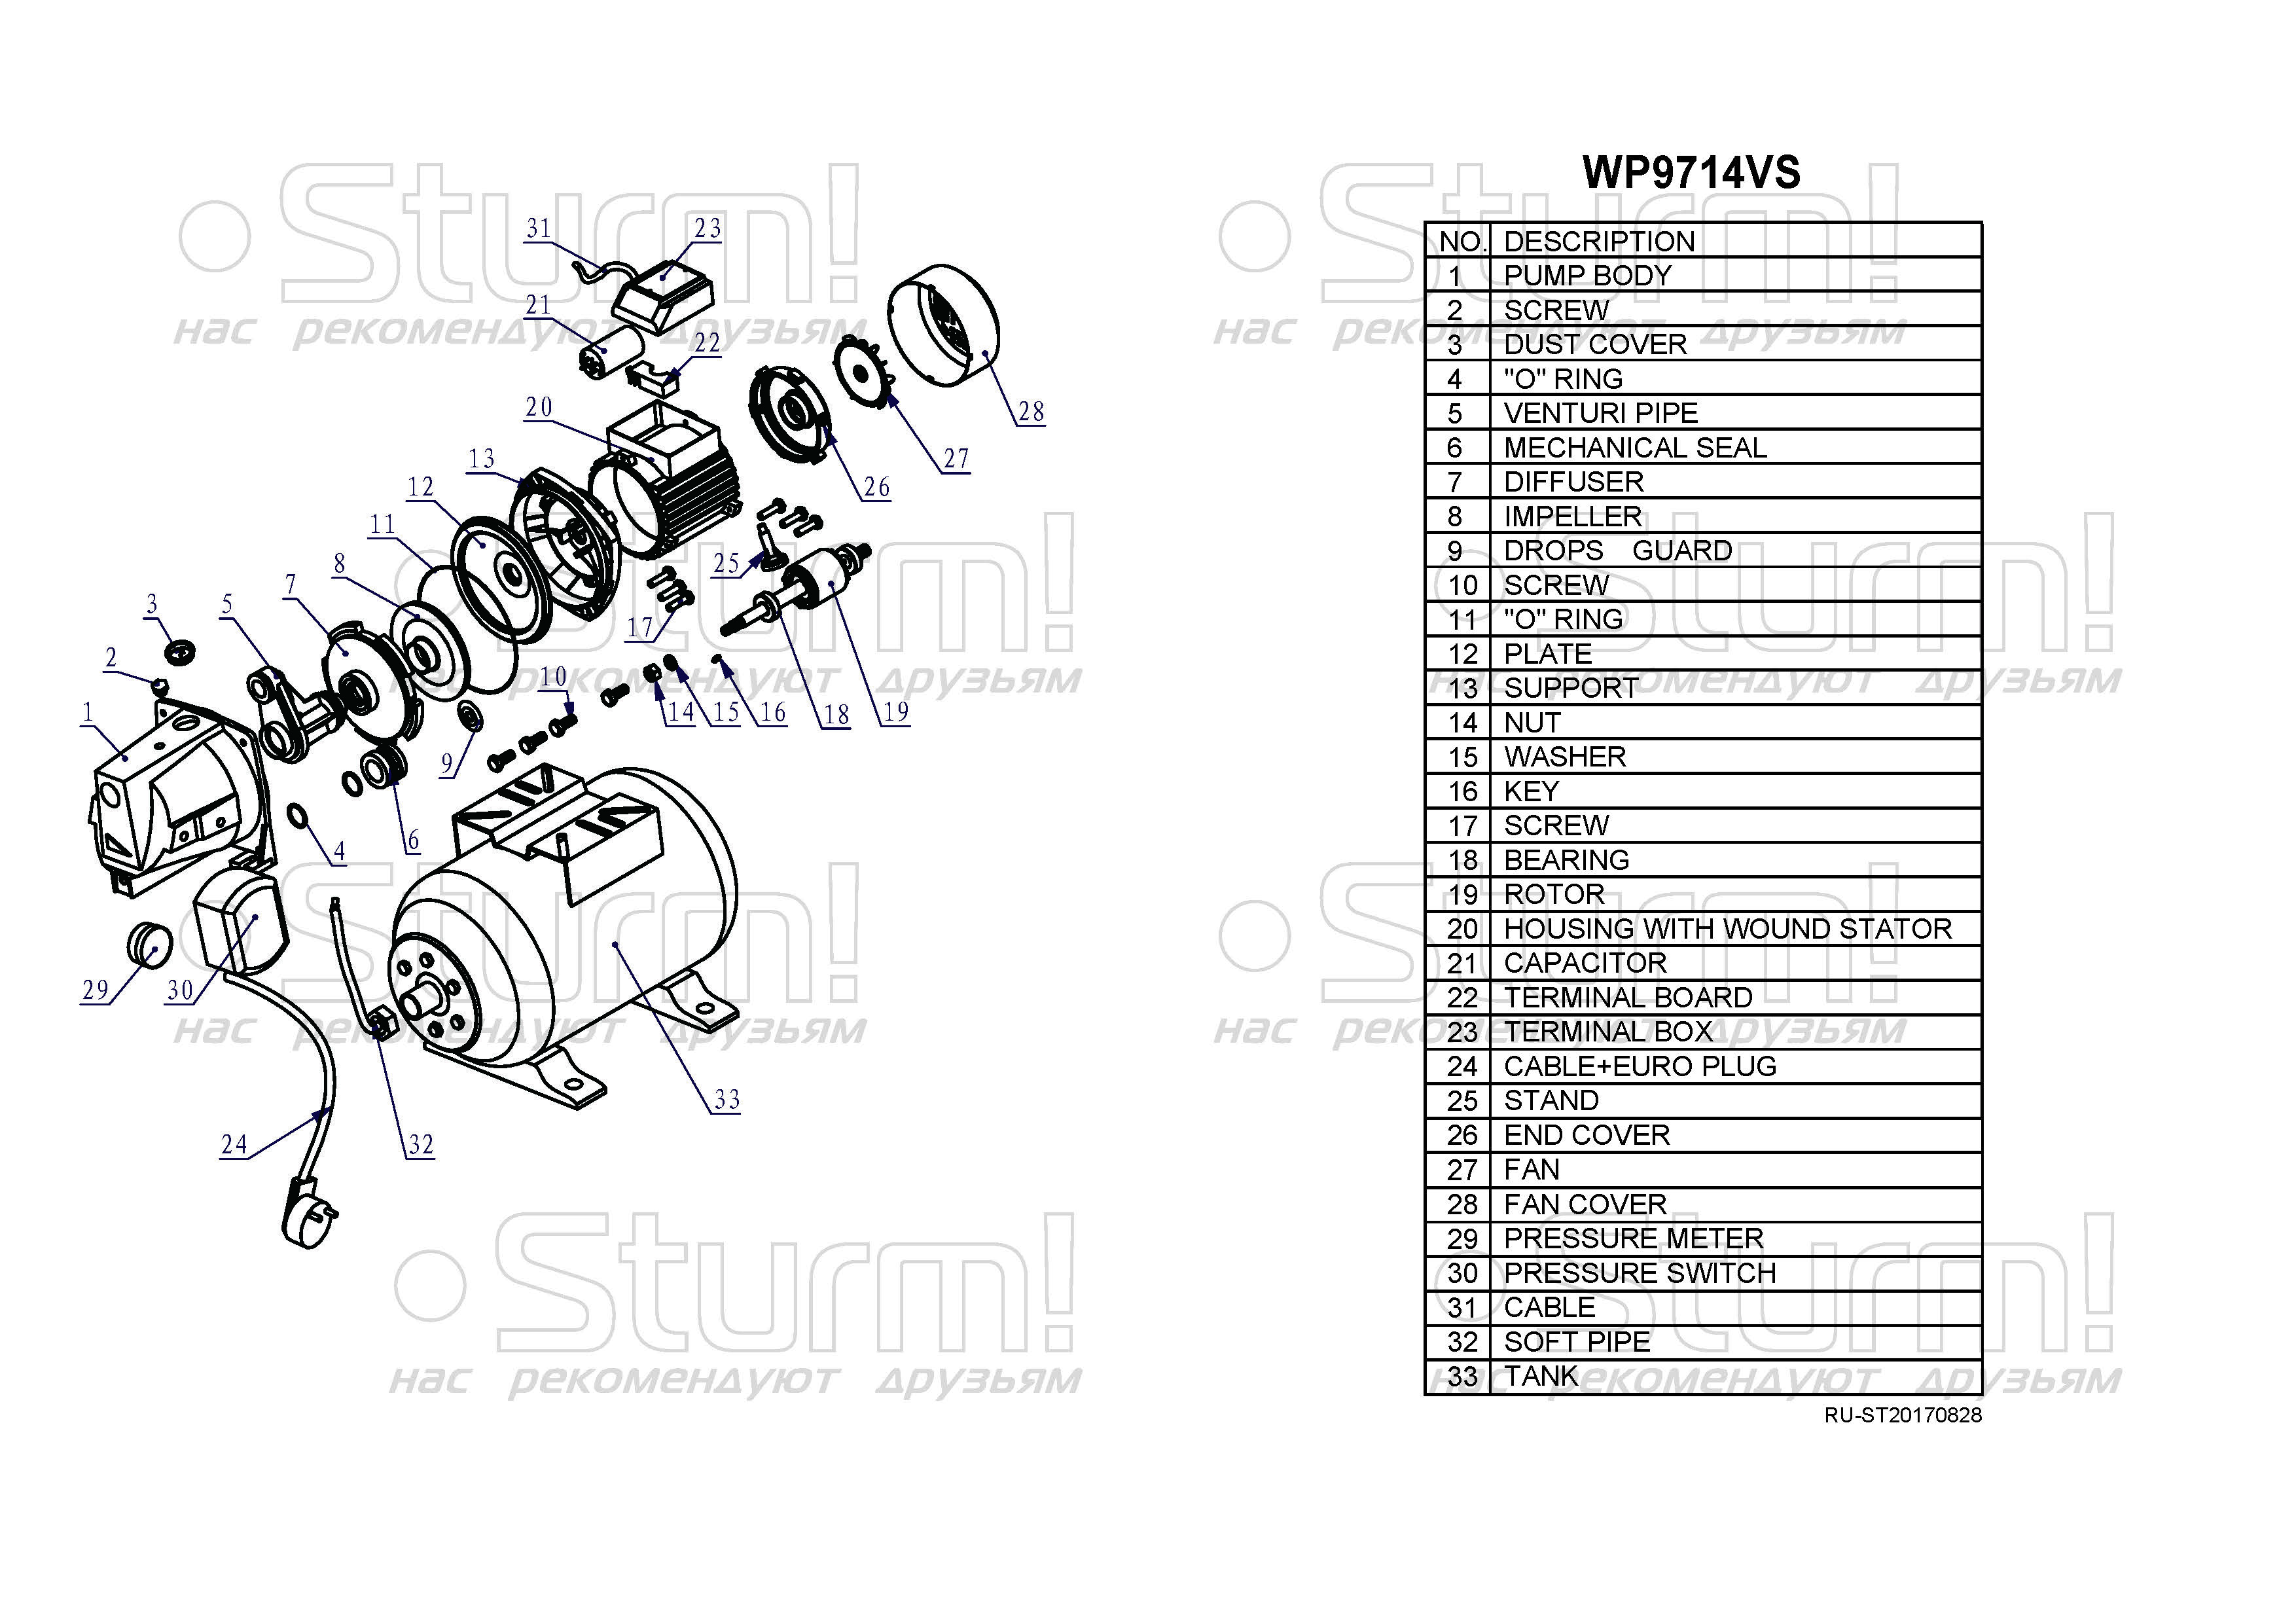  станция Sturm! WP9714VS - описание, характеристики, цена .